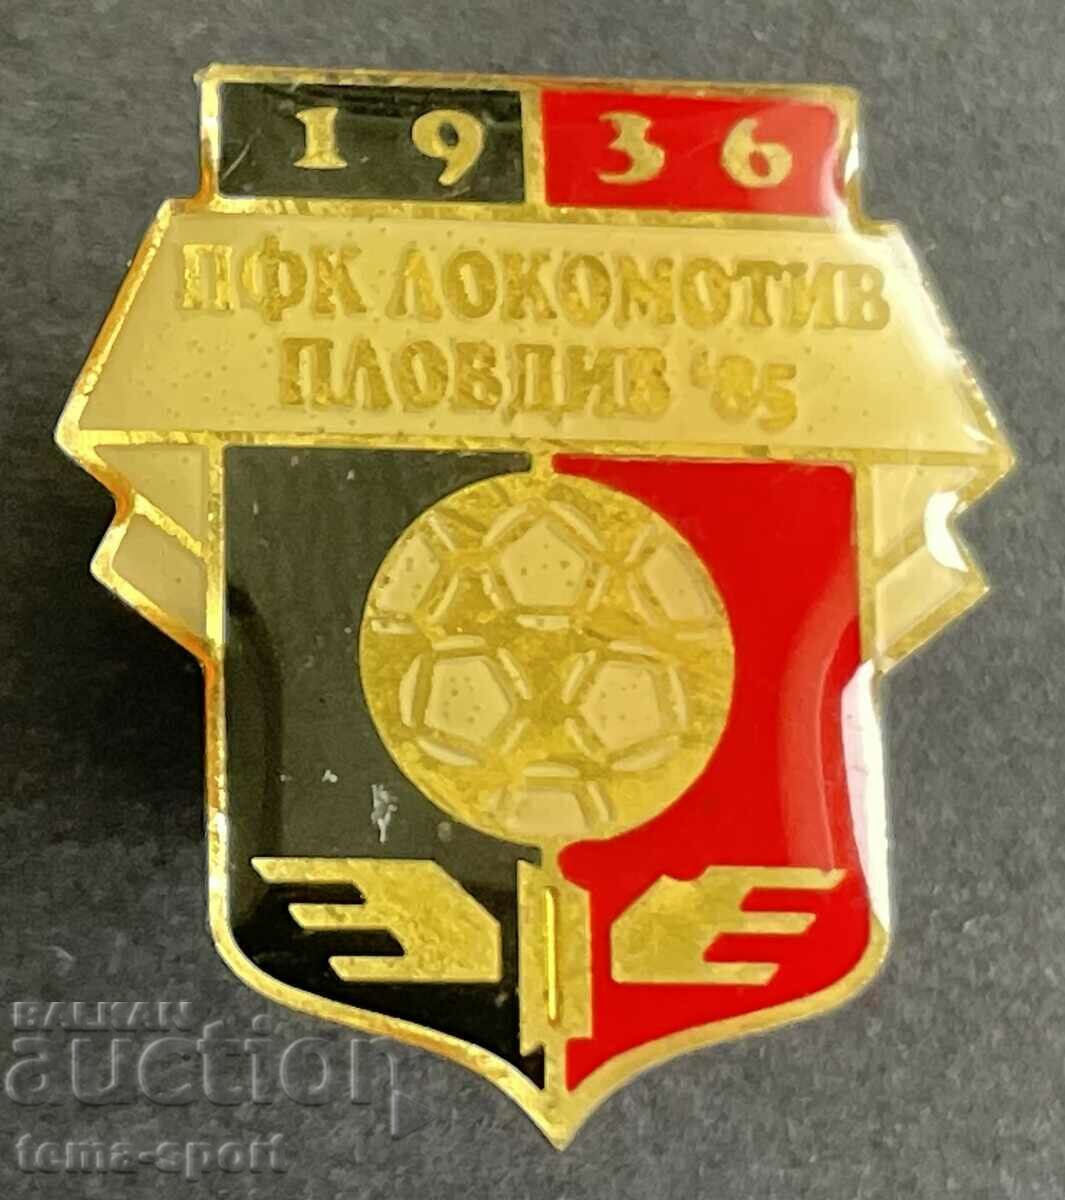 153 Bulgaria sign football club Lokomotiv Plovdiv 1936.